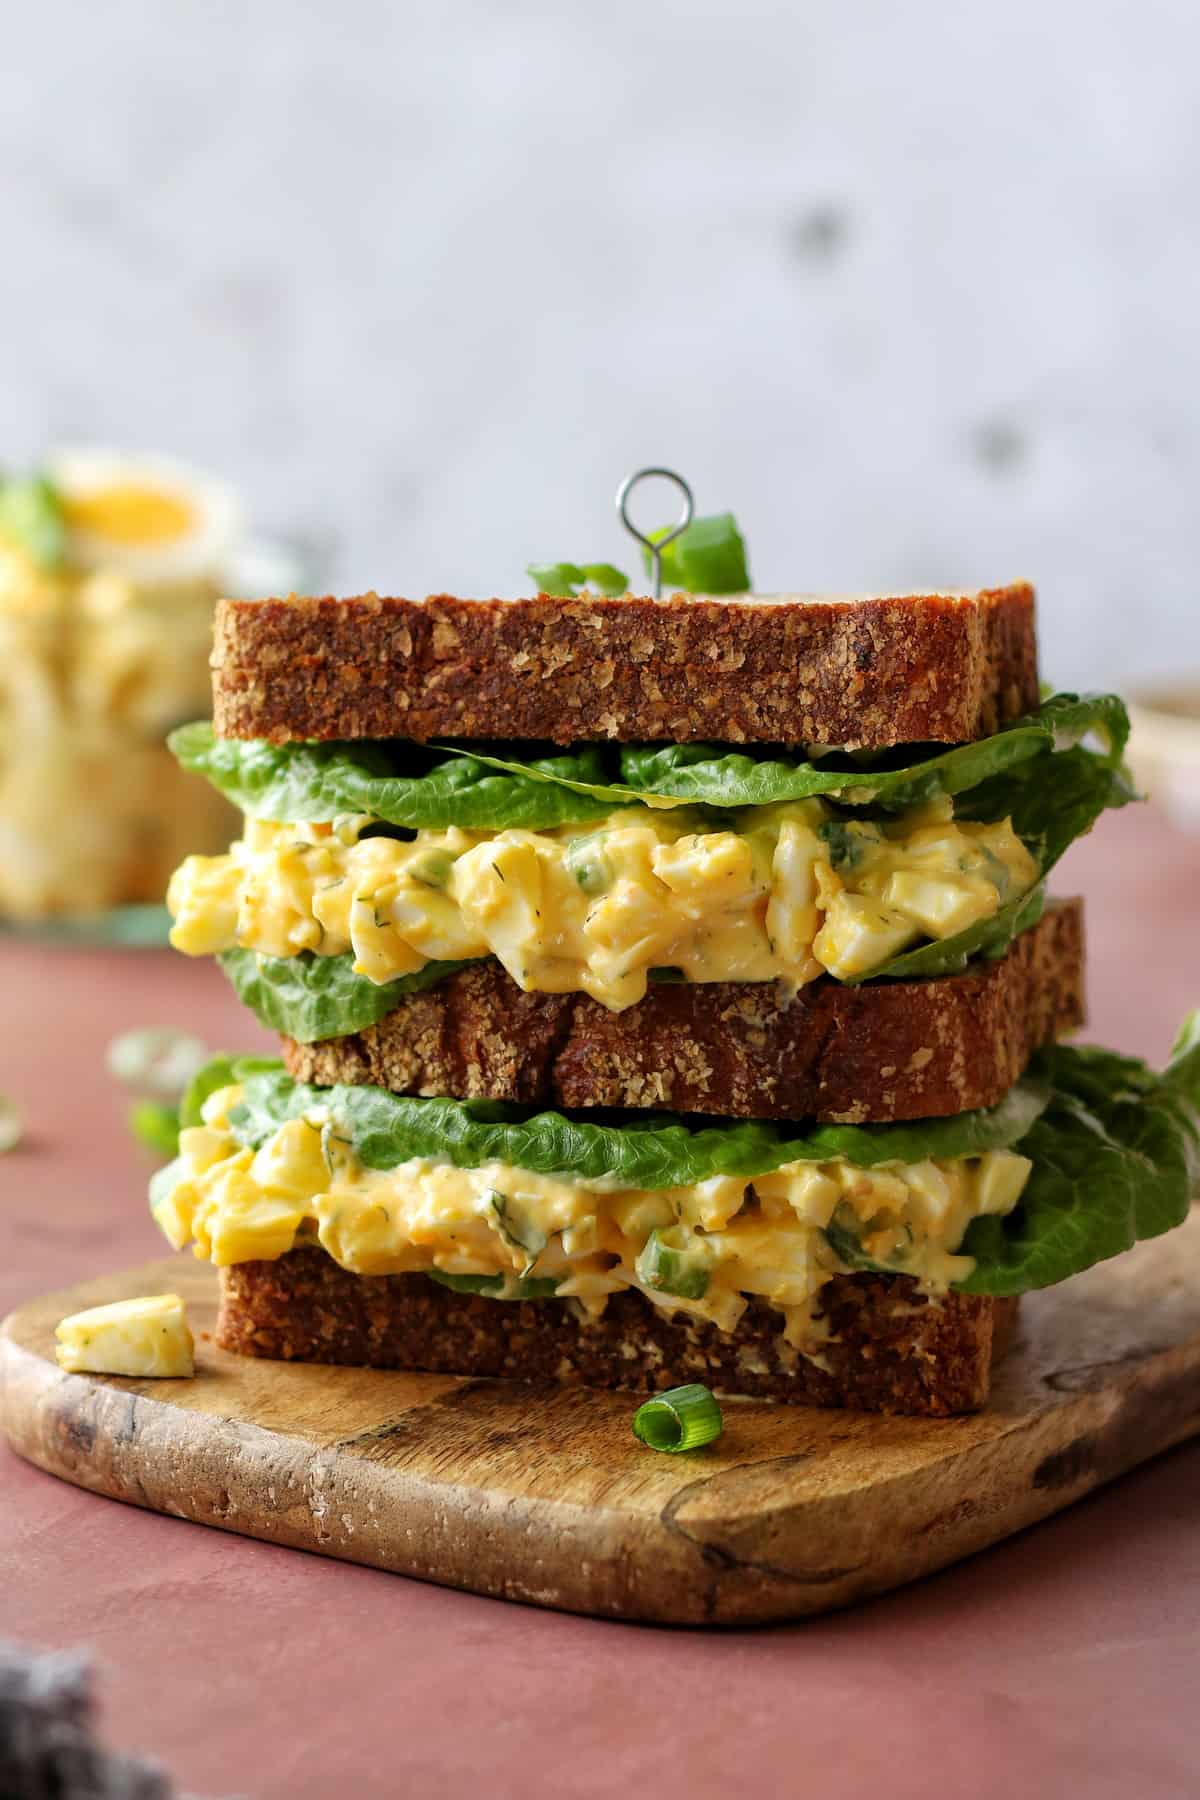 Der Eiersalat ist als Füllung für einen Sandwich-Burger zu sehen. 3 dicke Brotscheiben sind mit Eiersalat und Blattsalat gestapelt und werden mit einem Spieß zusammengehalten.